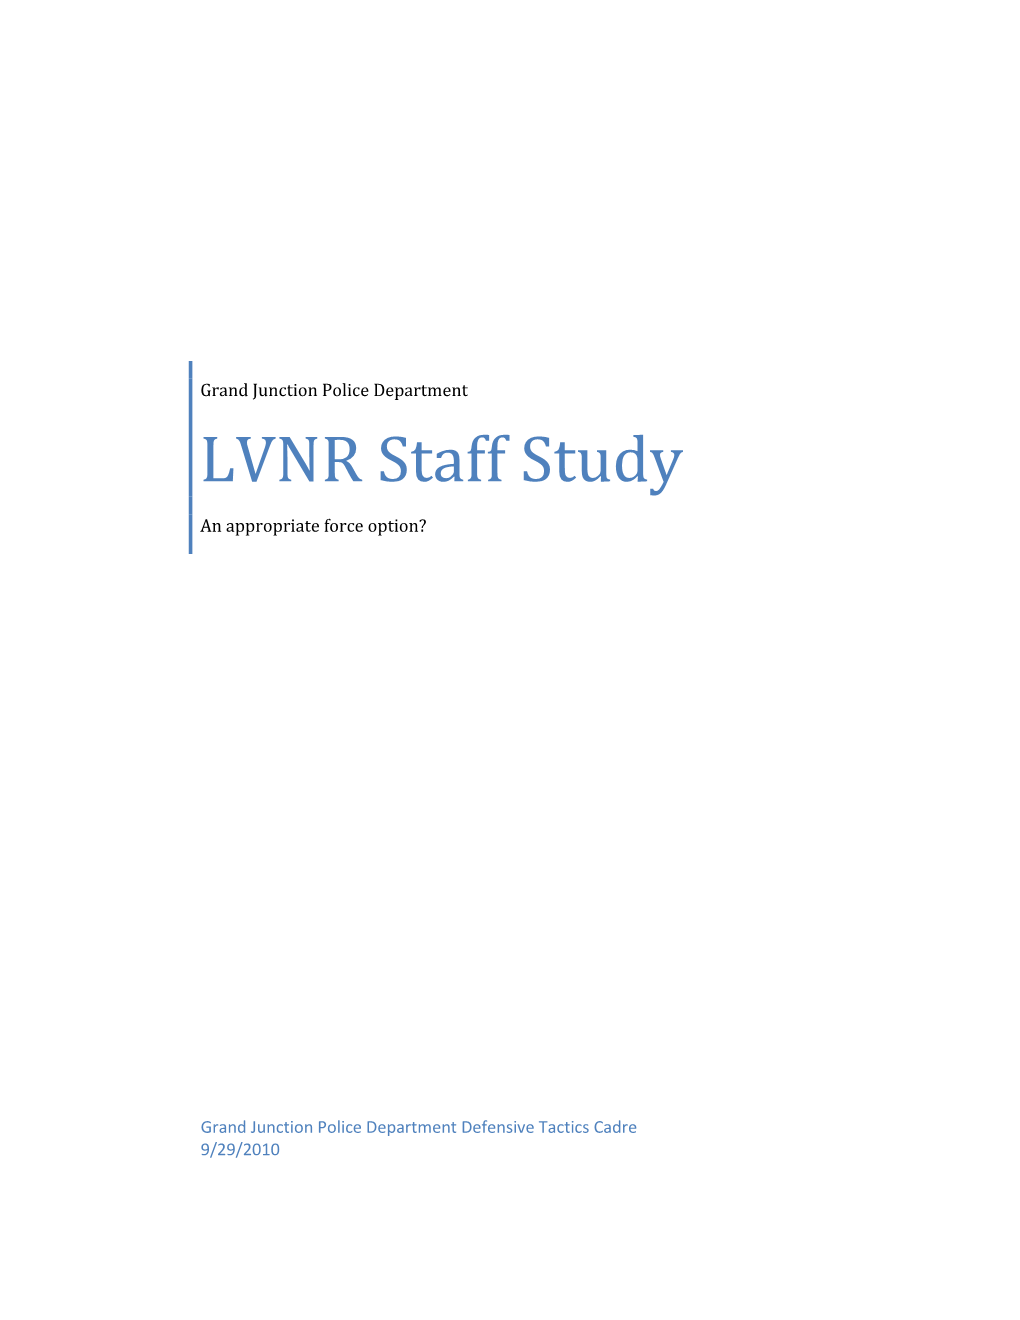 LVNR Staff Study